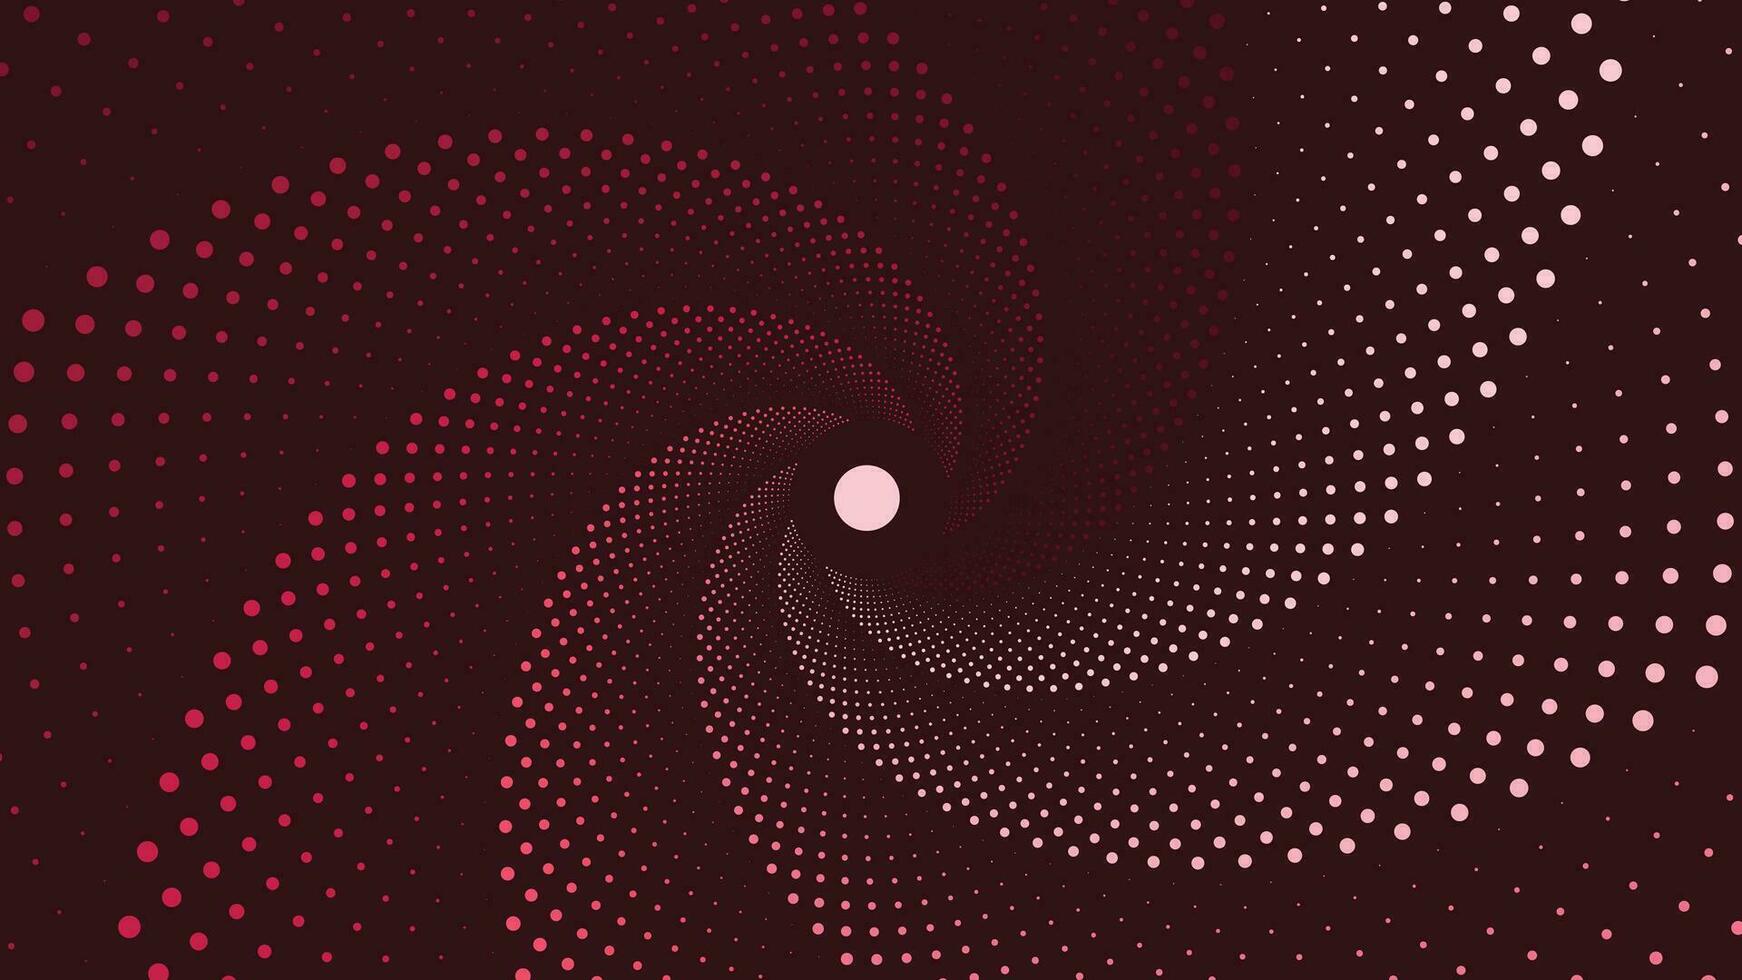 abstrait spirale vortex Facile Contexte pour votre Créatif projet. vecteur